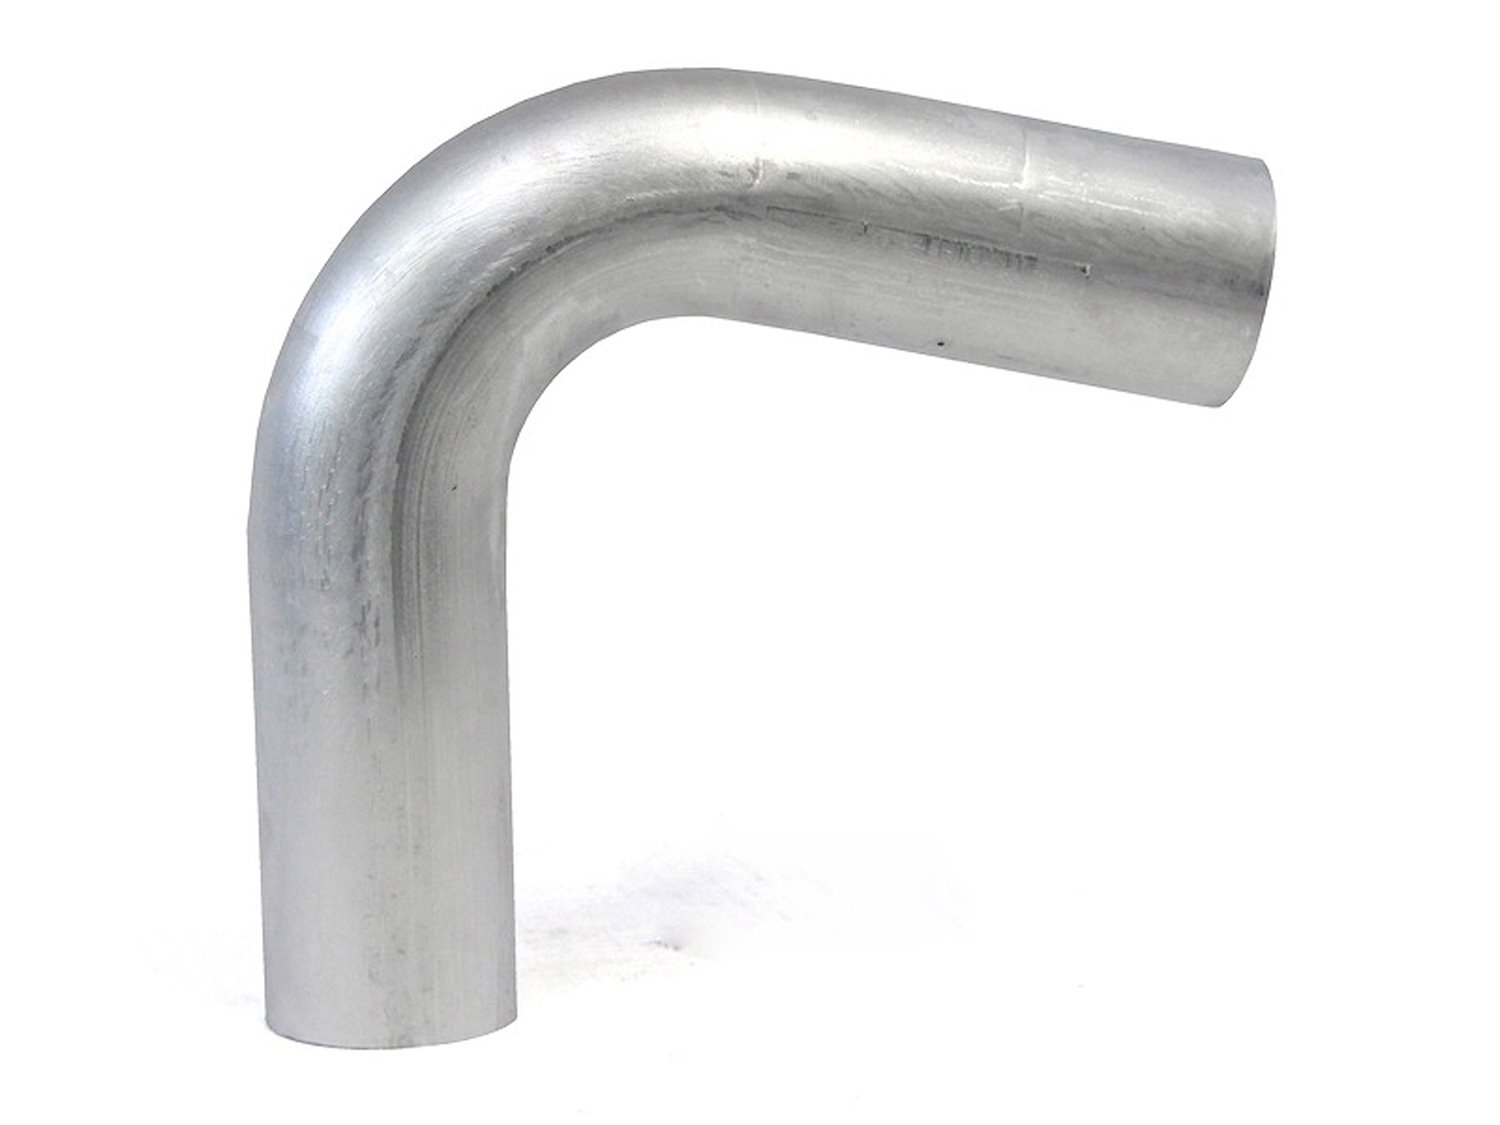 AT110-450-CLR-6 Aluminum Elbow Tube, 6061 Aluminum, 110-Degree Bend Elbow Tubing, 4-1/2 in. OD, Large Radius, 6 in. CLR